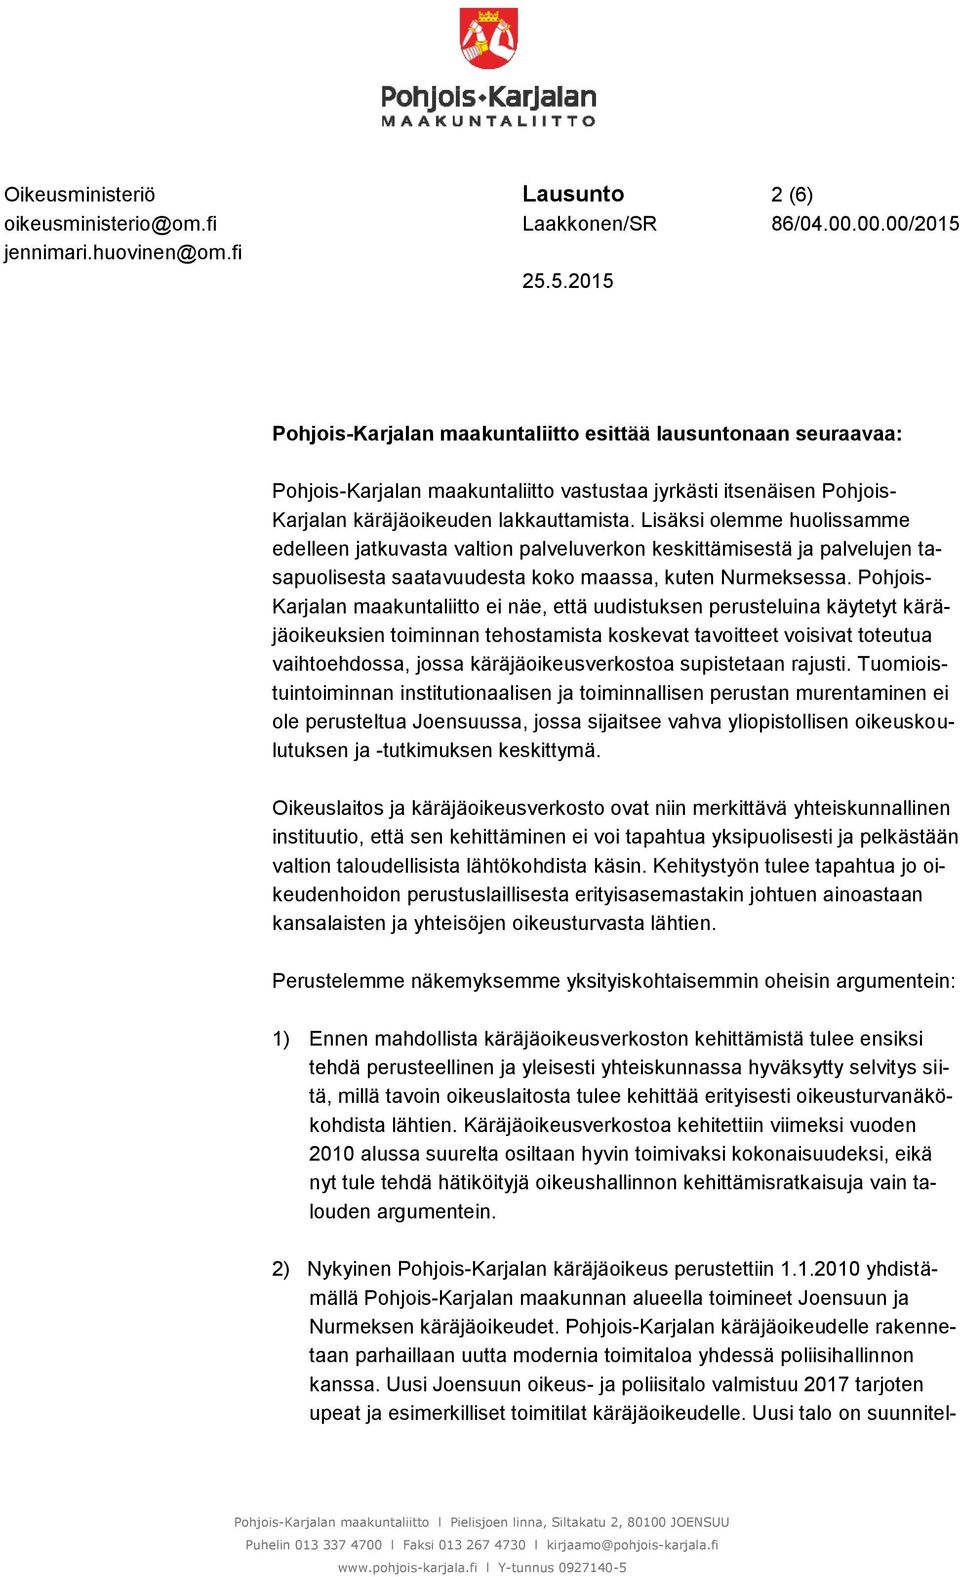 Pohjois- Karjalan maakuntaliitto ei näe, että uudistuksen perusteluina käytetyt käräjäoikeuksien toiminnan tehostamista koskevat tavoitteet voisivat toteutua vaihtoehdossa, jossa